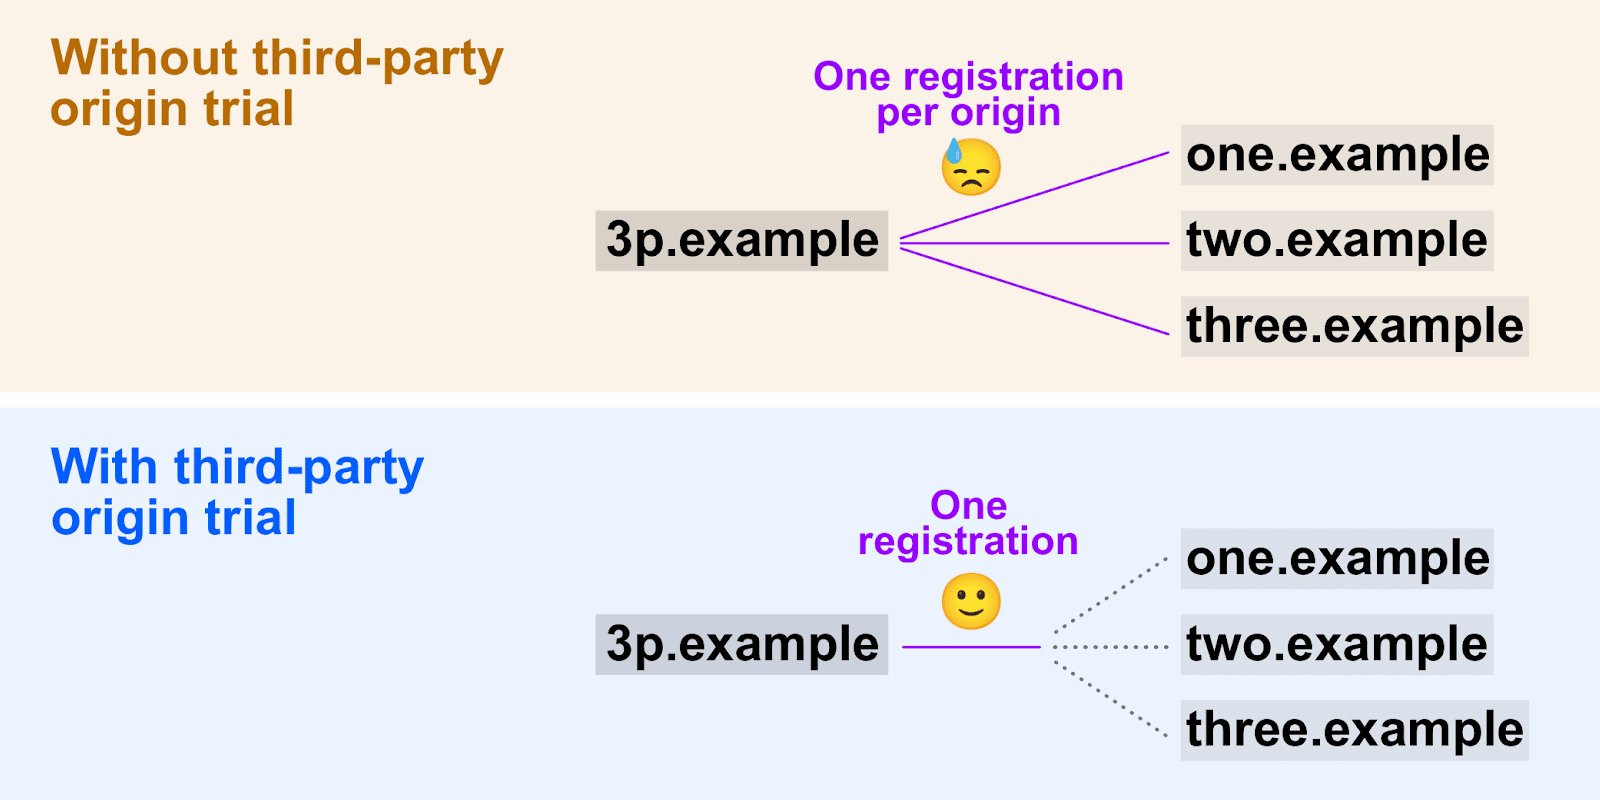 Diagramme illustrant comment les phases d&#39;évaluation tierces permettent l&#39;utilisation d&#39;un seul jeton d&#39;enregistrement pour plusieurs origines